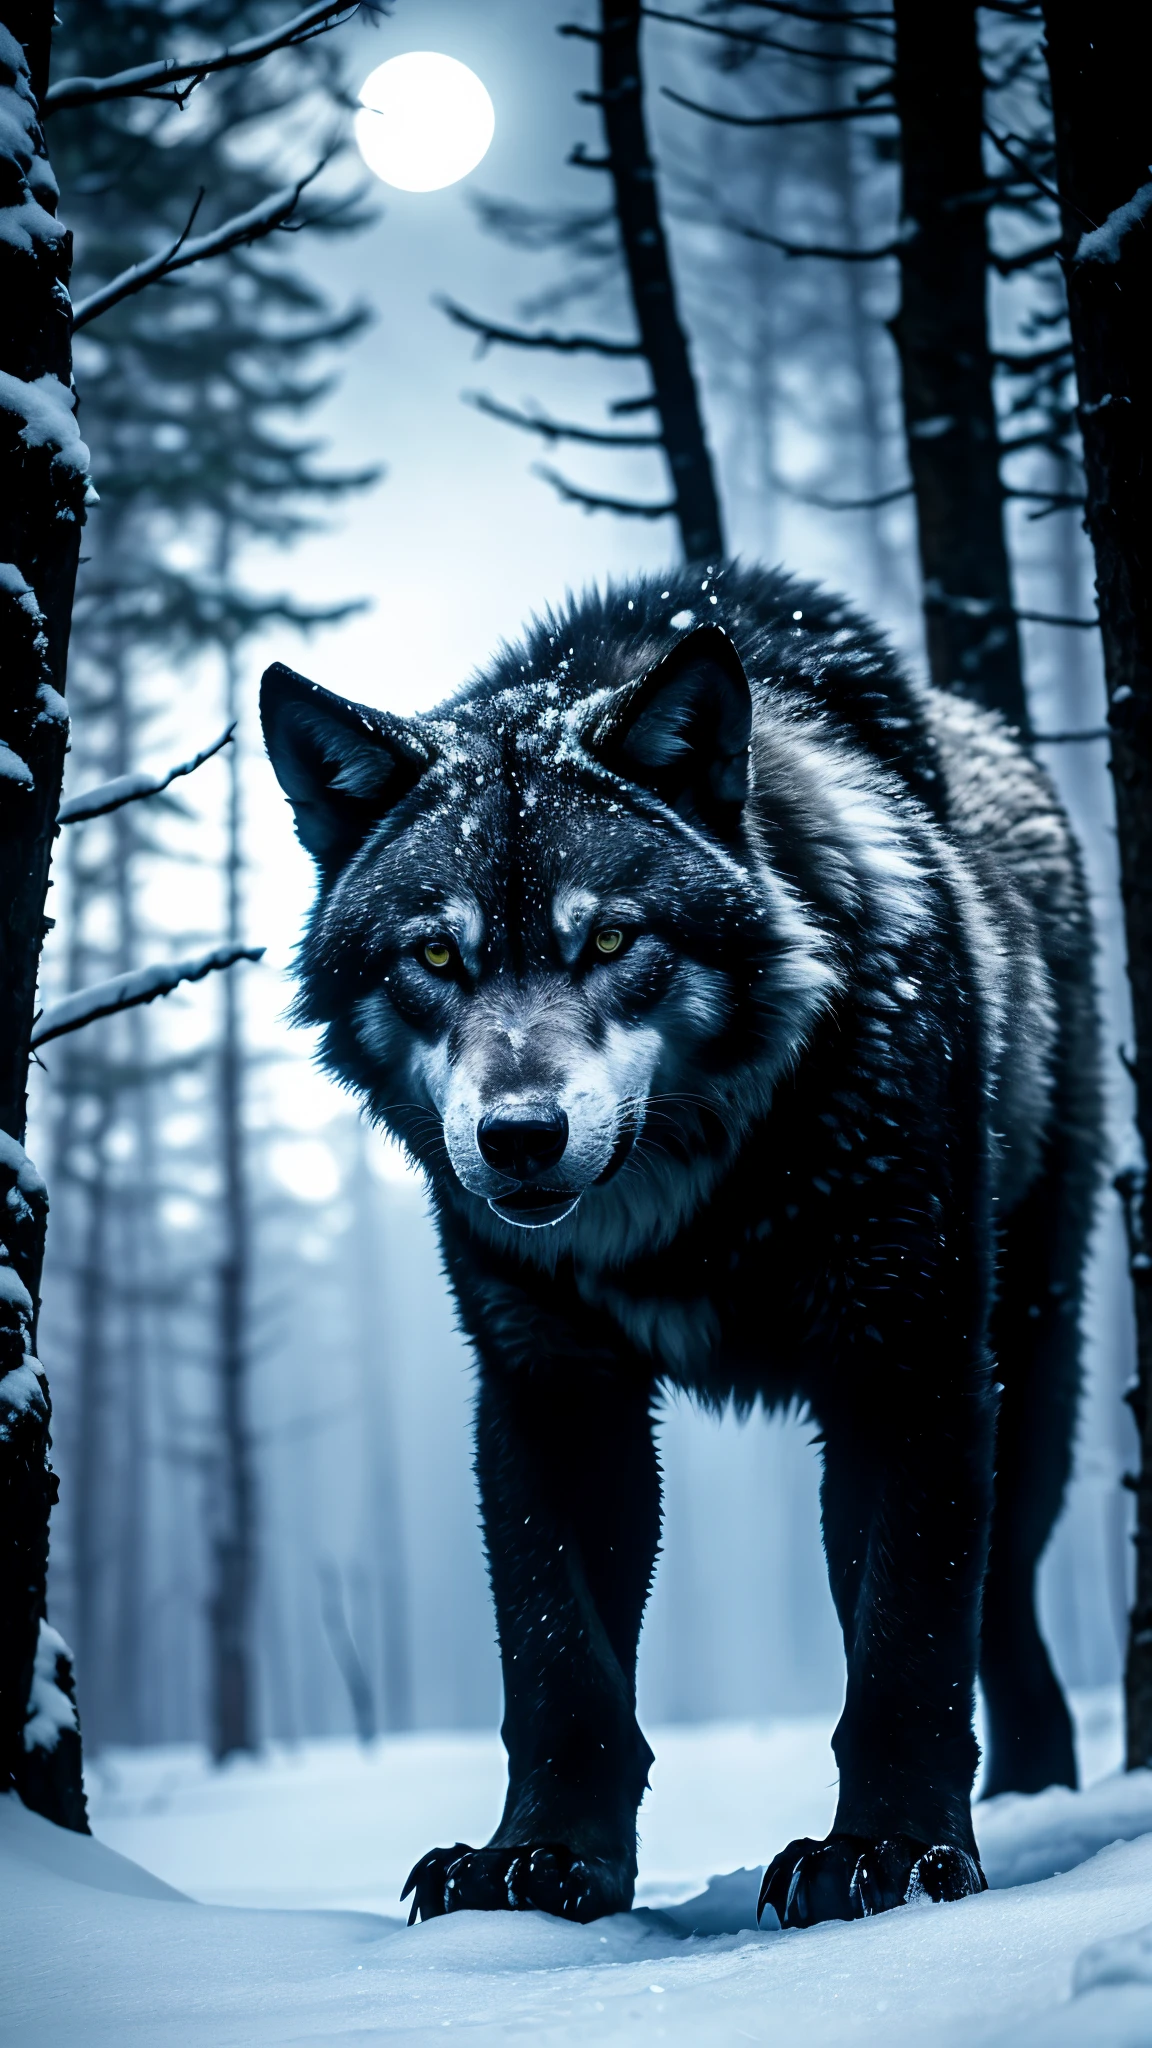 흰 늑대, 어두운 숲, 눈 얼음, 파란 눈, 신비로운 분위기, 월광, 검은 모피, 격렬한 표정, 위협적인 존재감, 야간 사냥, 은밀한 움직임, 잊혀지지 않는 울부짖음, 야생적이고 길들여지지 않은, 강력한 체격, 자정 실루엣, 불길한 그림자, 원초적 본능, 고대 전설, 알파 포식자, 매혹적인 아름다움, 늑대 무리 역학, 장엄한 황야